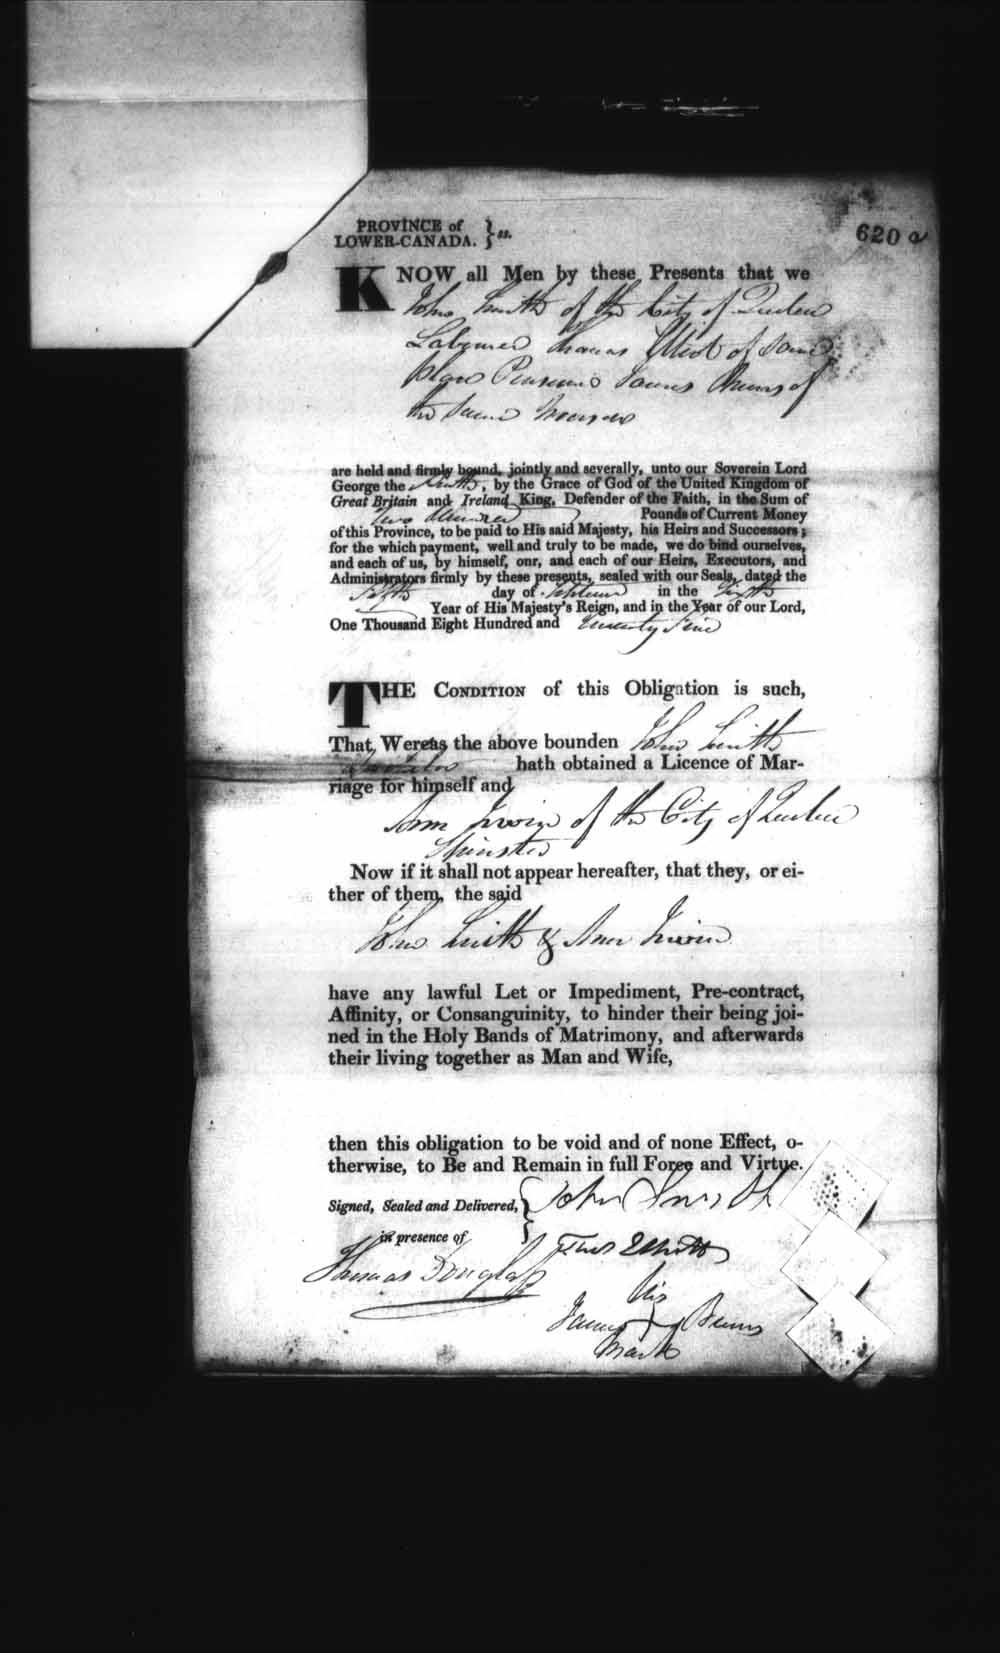 Page numérisé de Cautionnements de mariages pour le Haut-Canada et le Bas-Canada (1779-1865) pour l'image numéro: e008236636